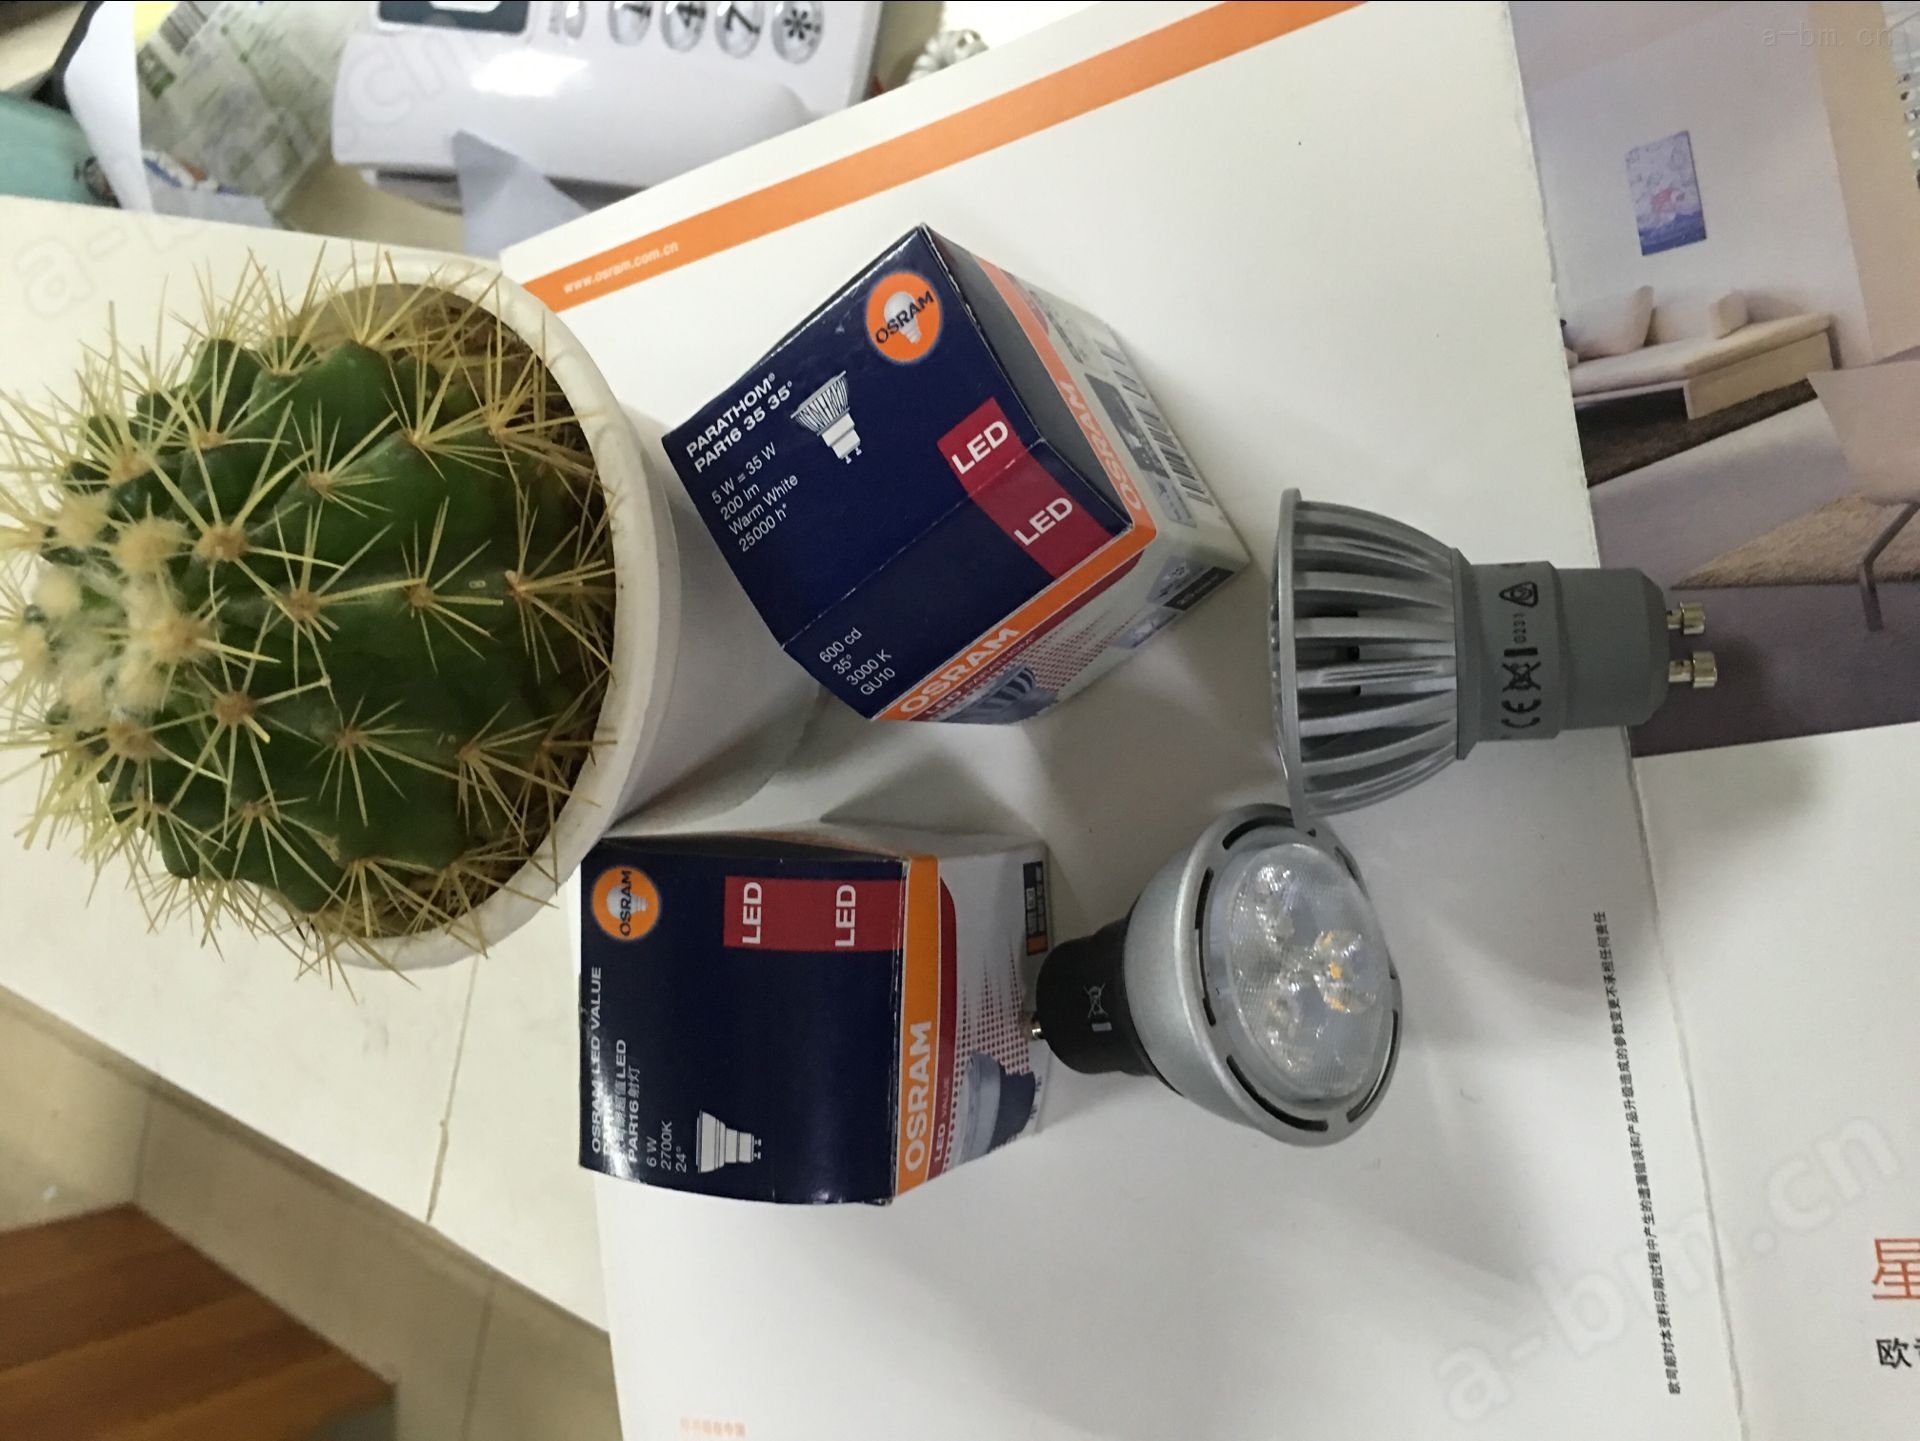 欧司朗LED灯杯/欧司朗变压器/LED变压器/LED调光变压器